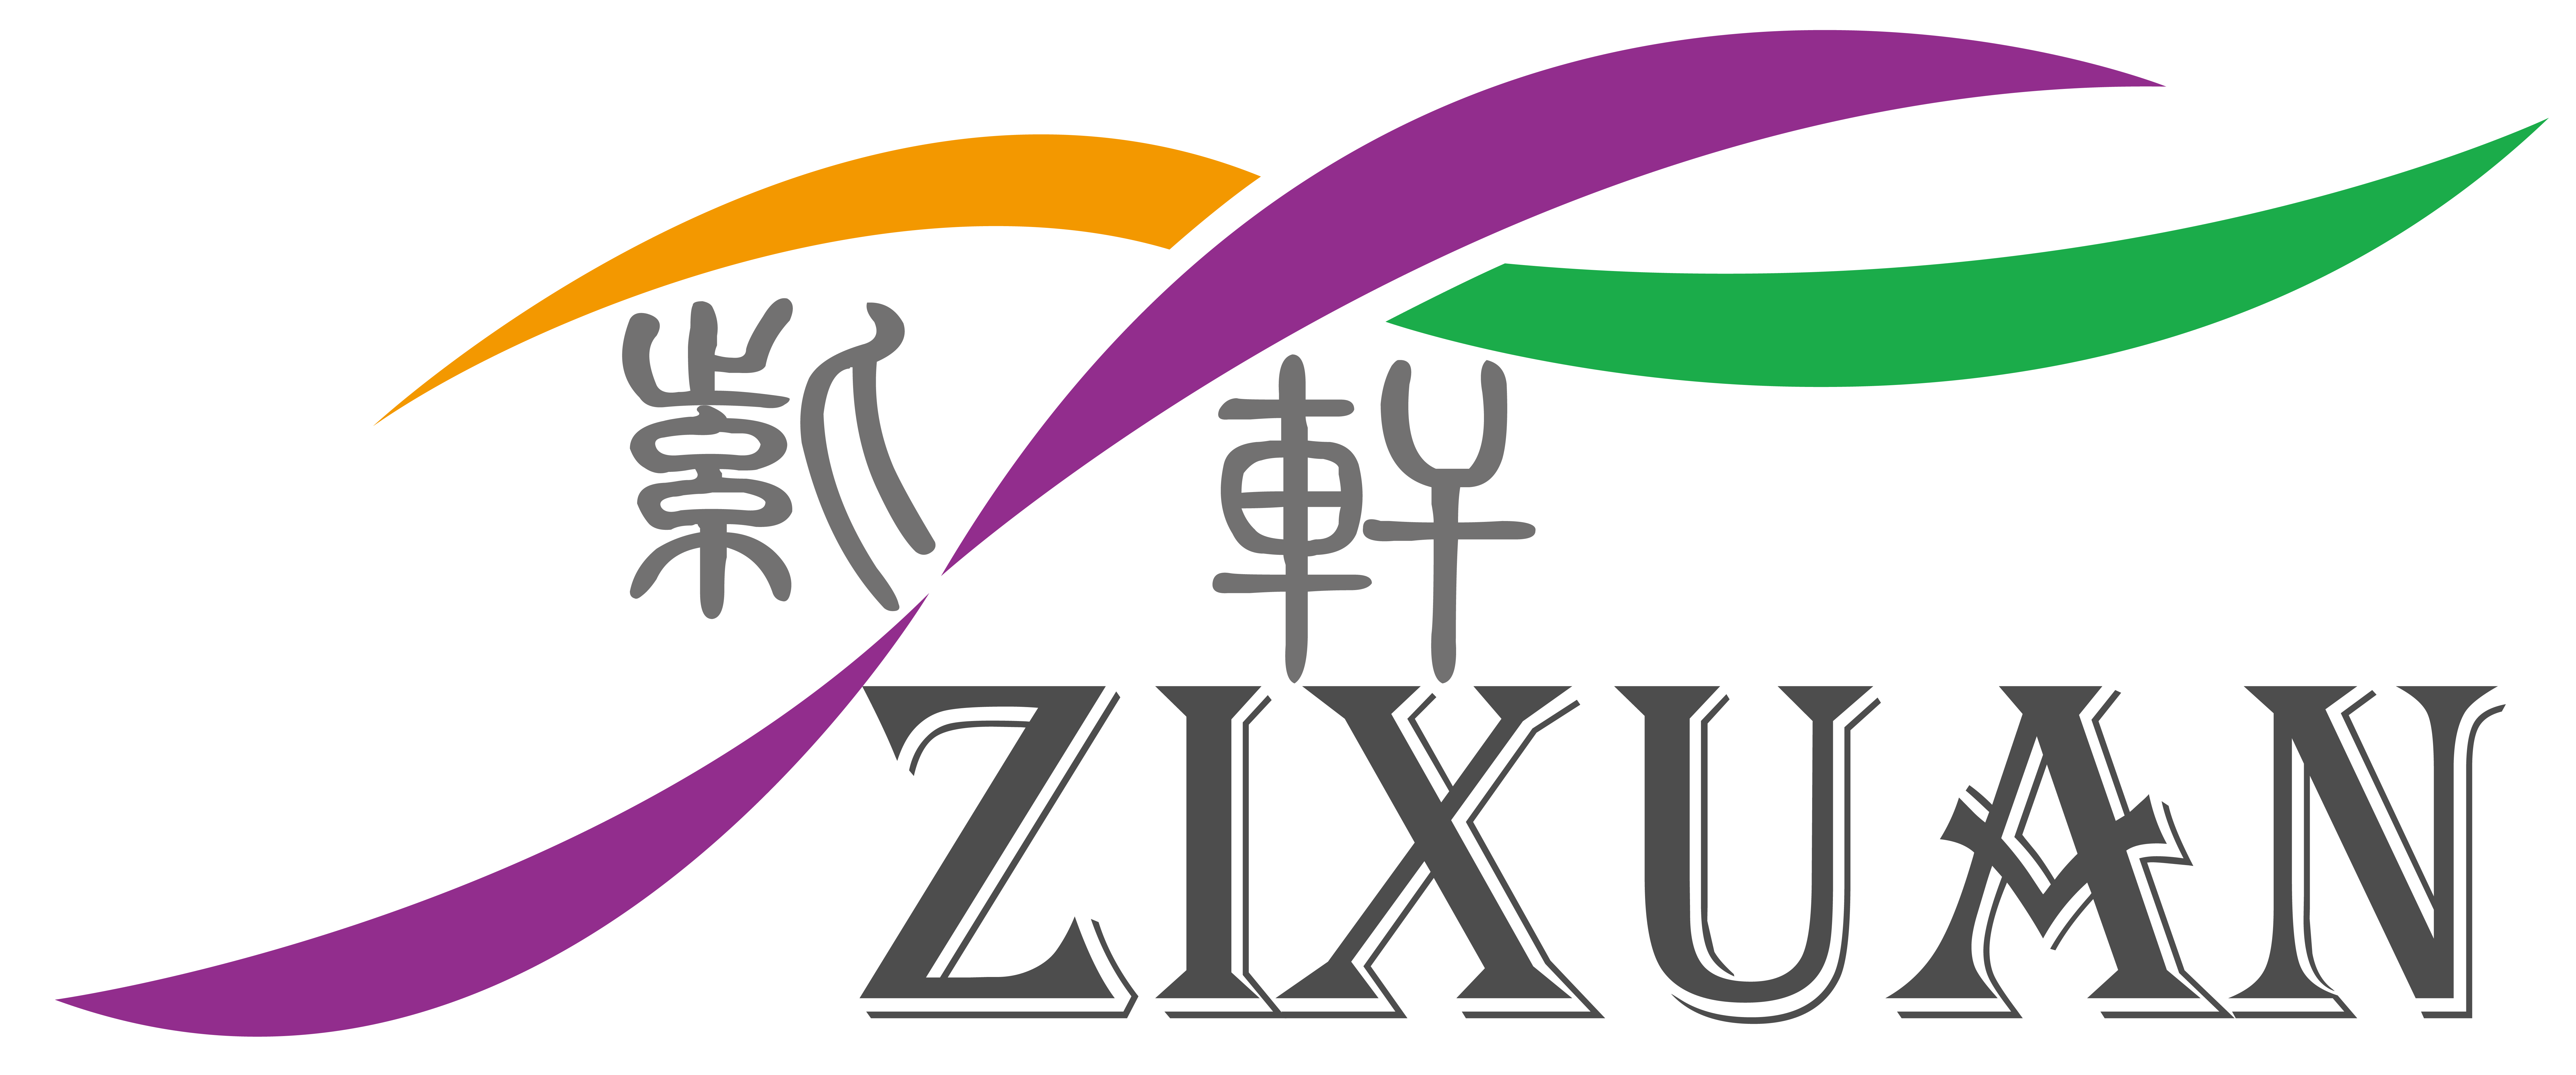 上海紫轩印务有限公司的企业标志